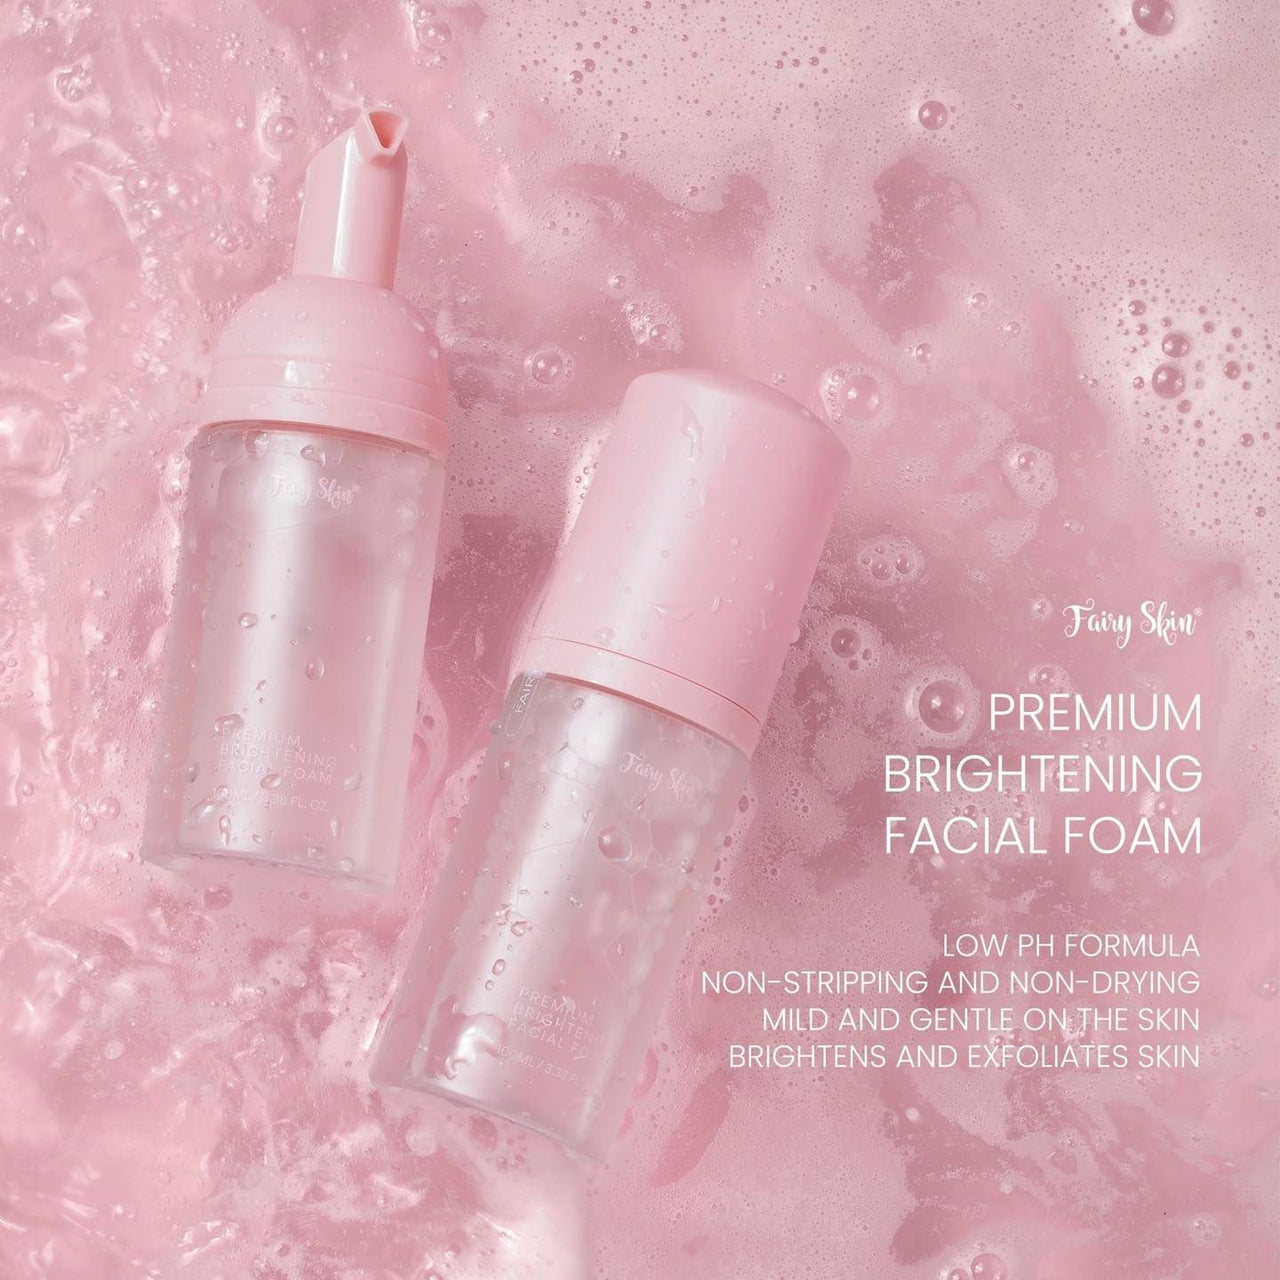 Fairy Skin Premium Brightening Facial Foam 100g